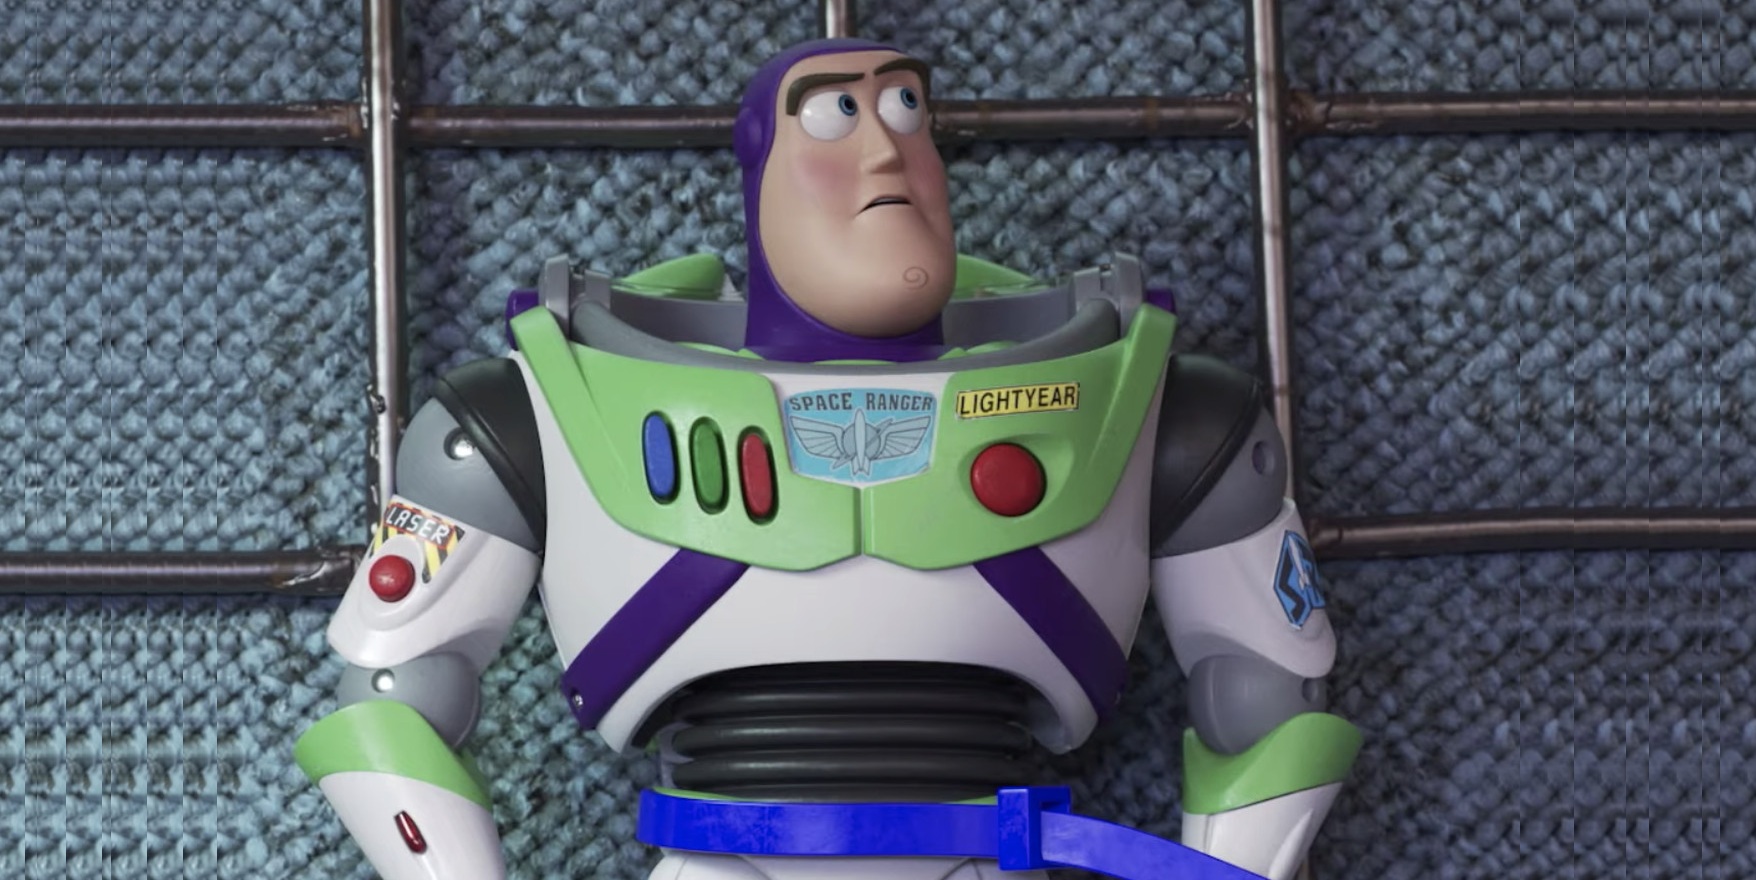 EN PROBLEMAS: ¡Mirá en nuevo adelanto de Toy Story 4!